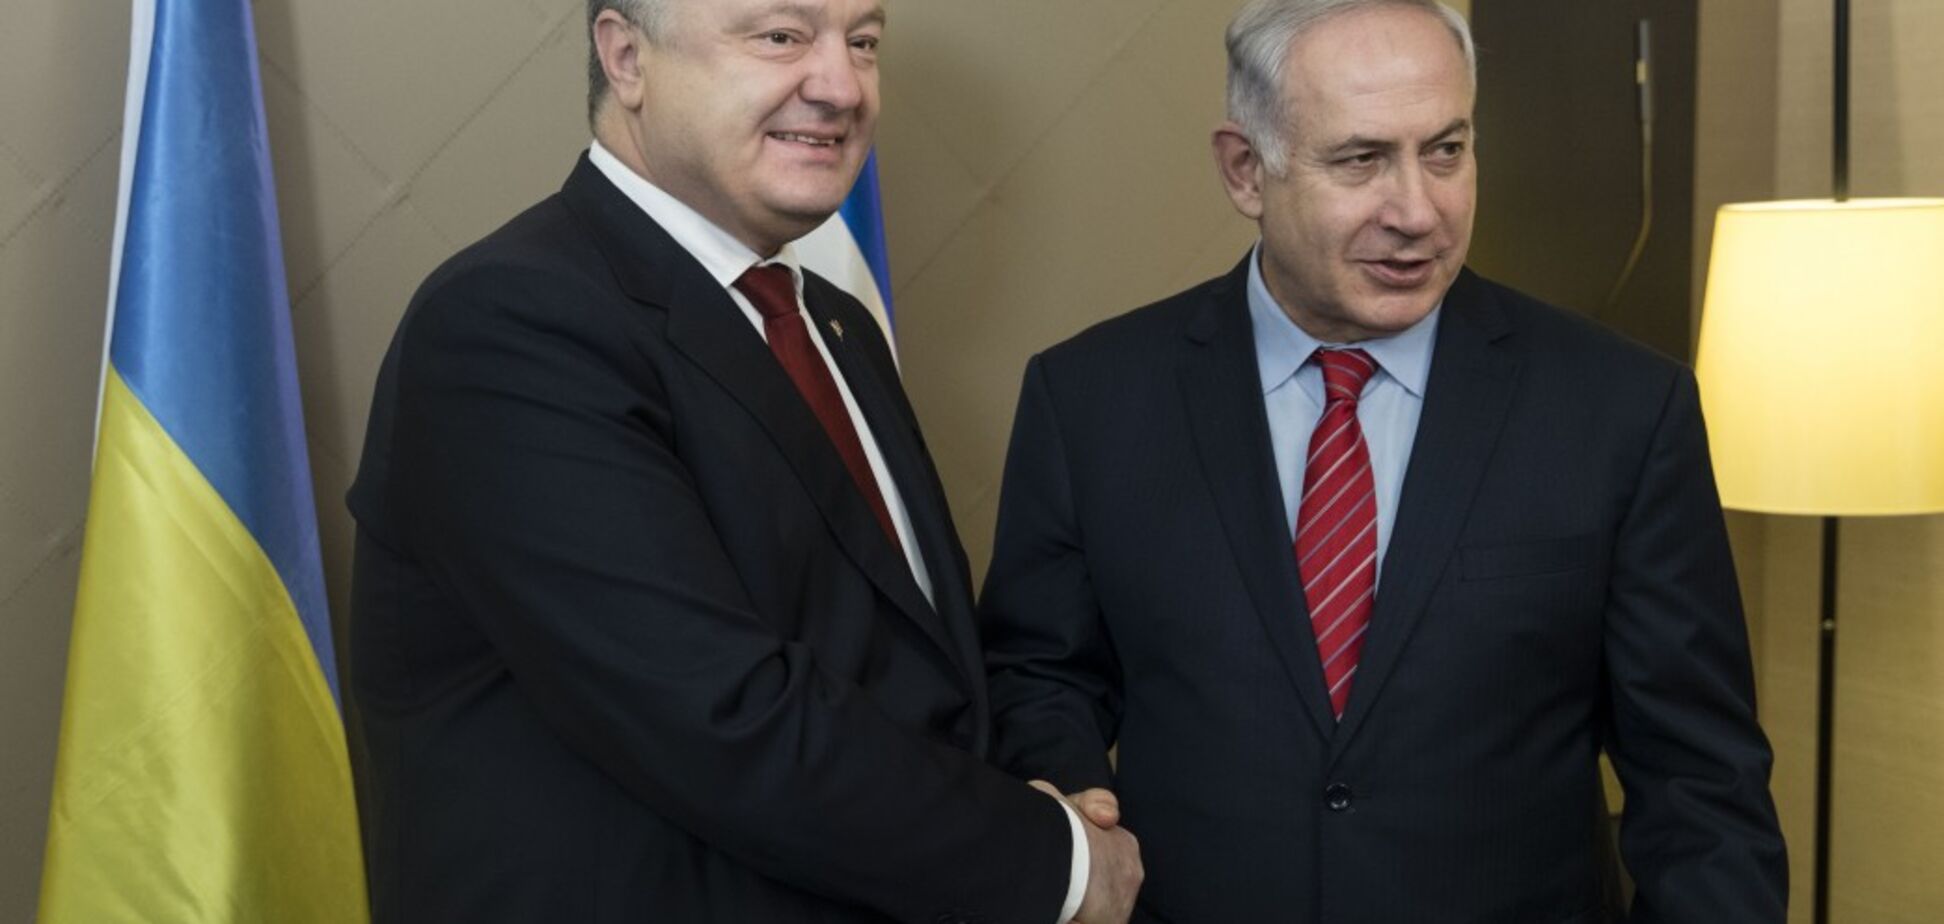 Порошенко зустрівся з прем'єр-міністром Ізраїлю: всі подробиці